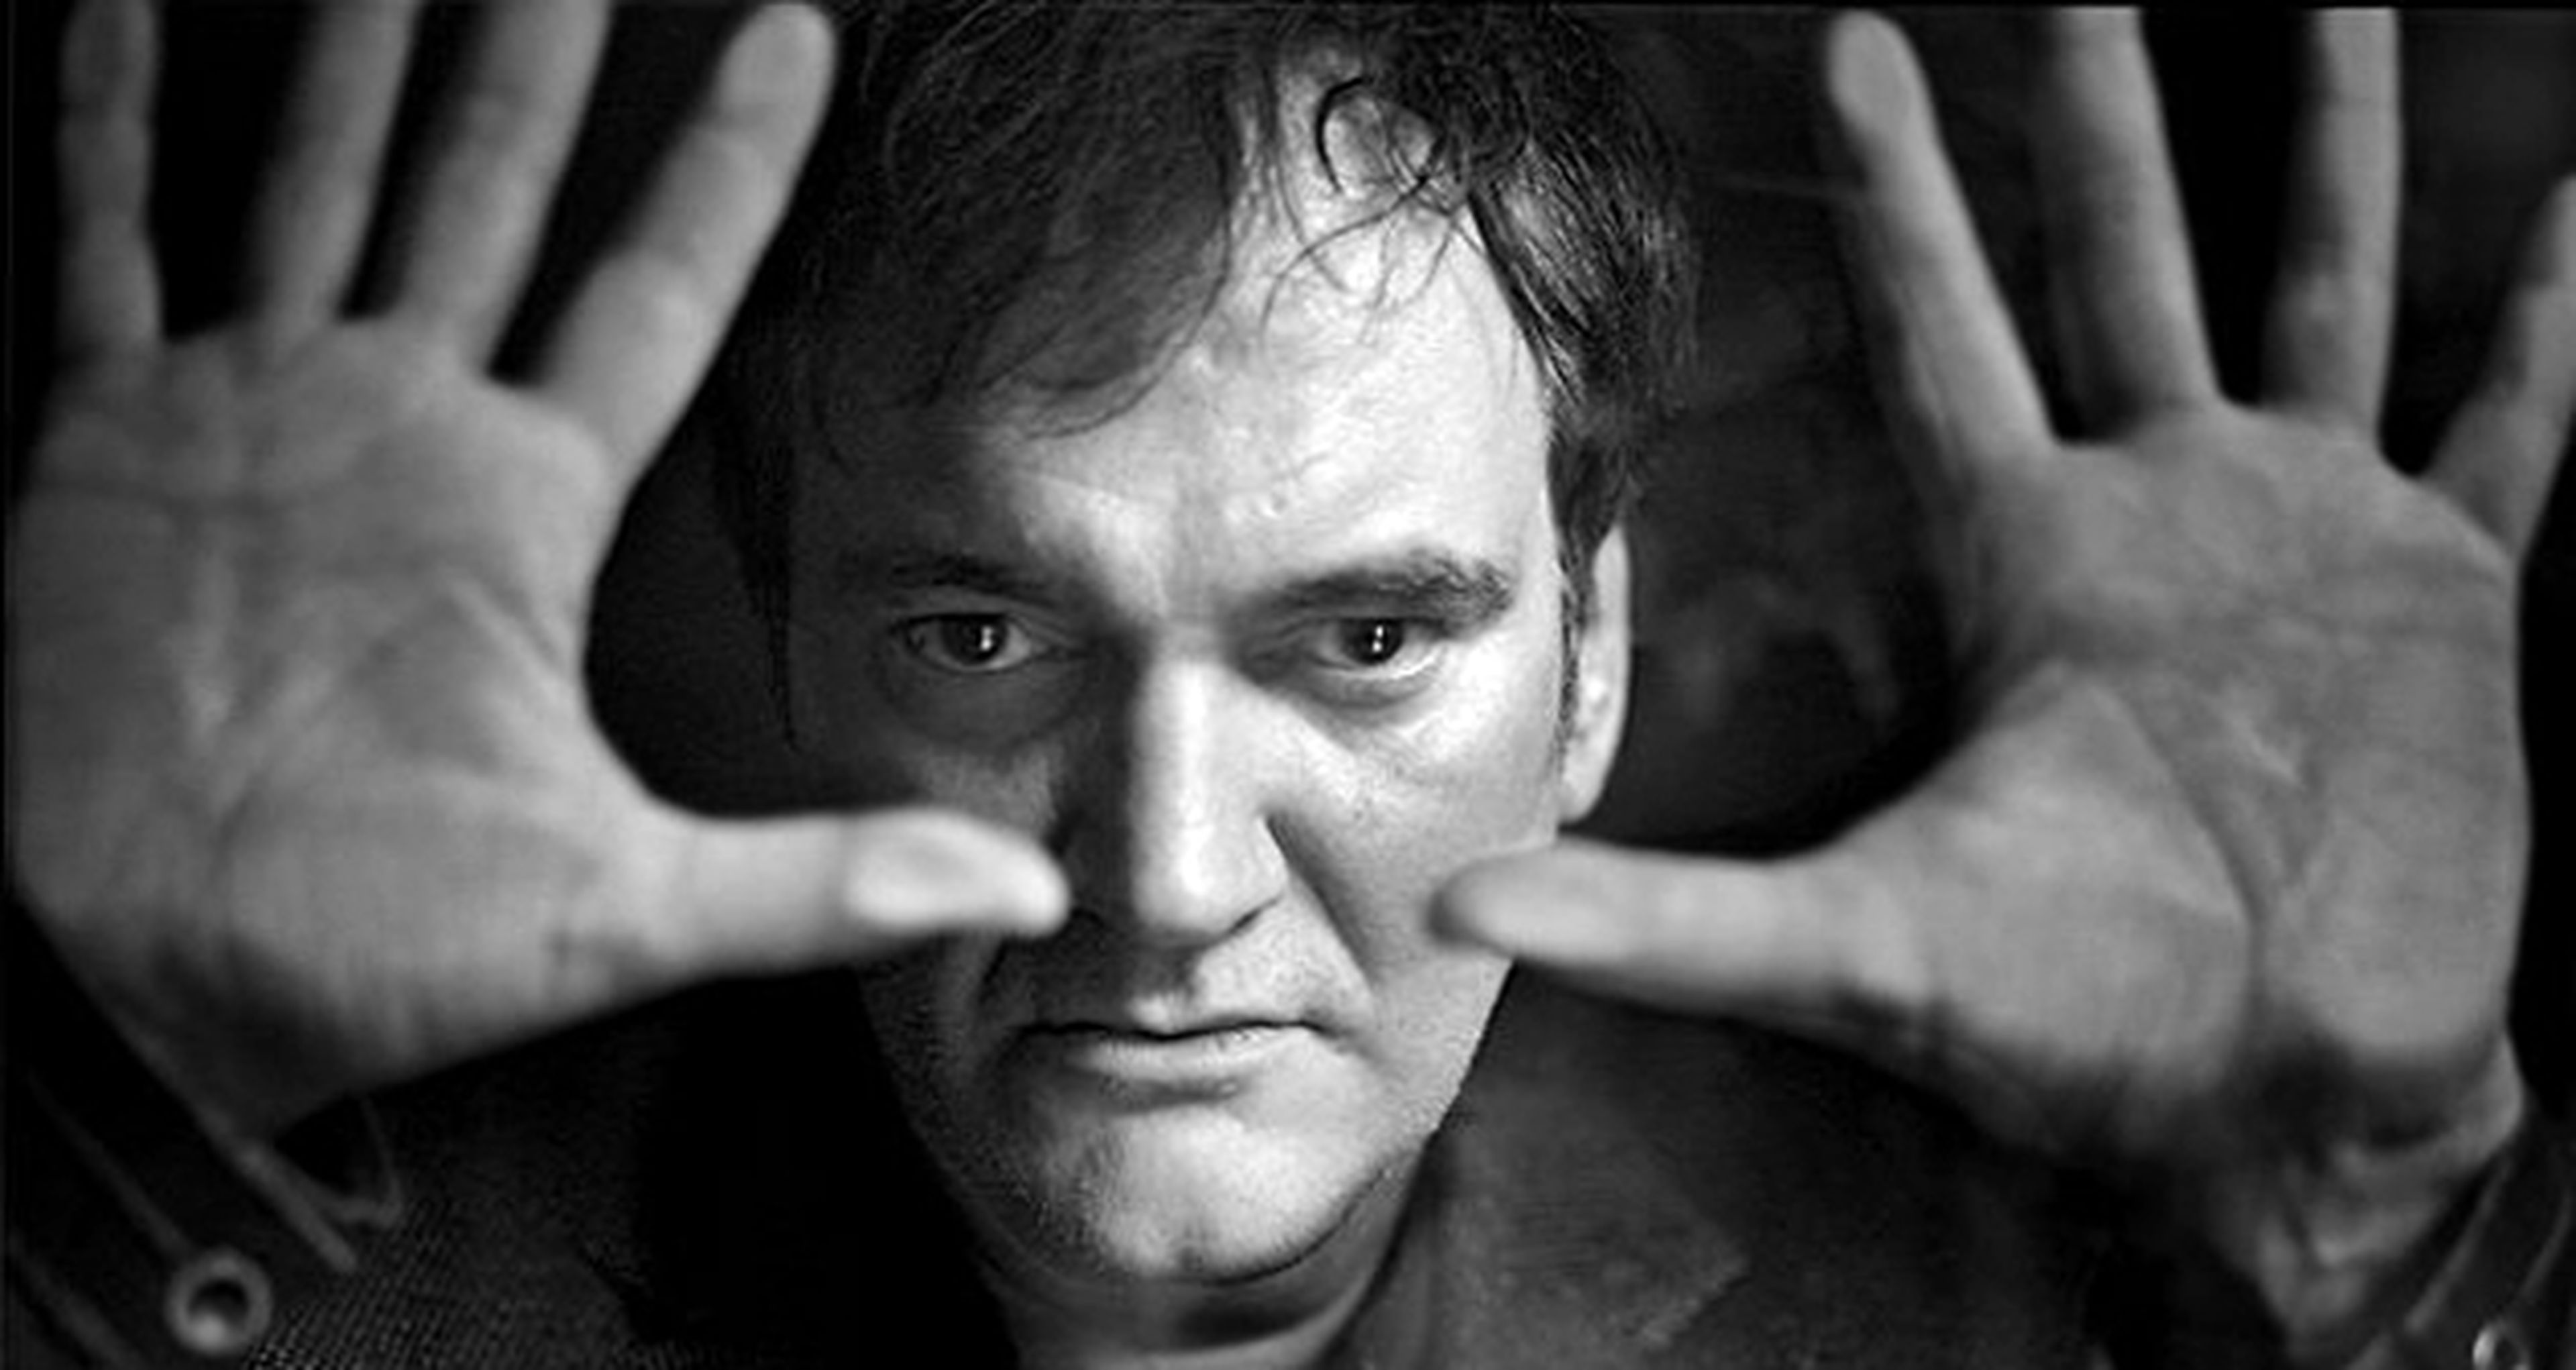 Killer Crow completaría la trilogía de Tarantino